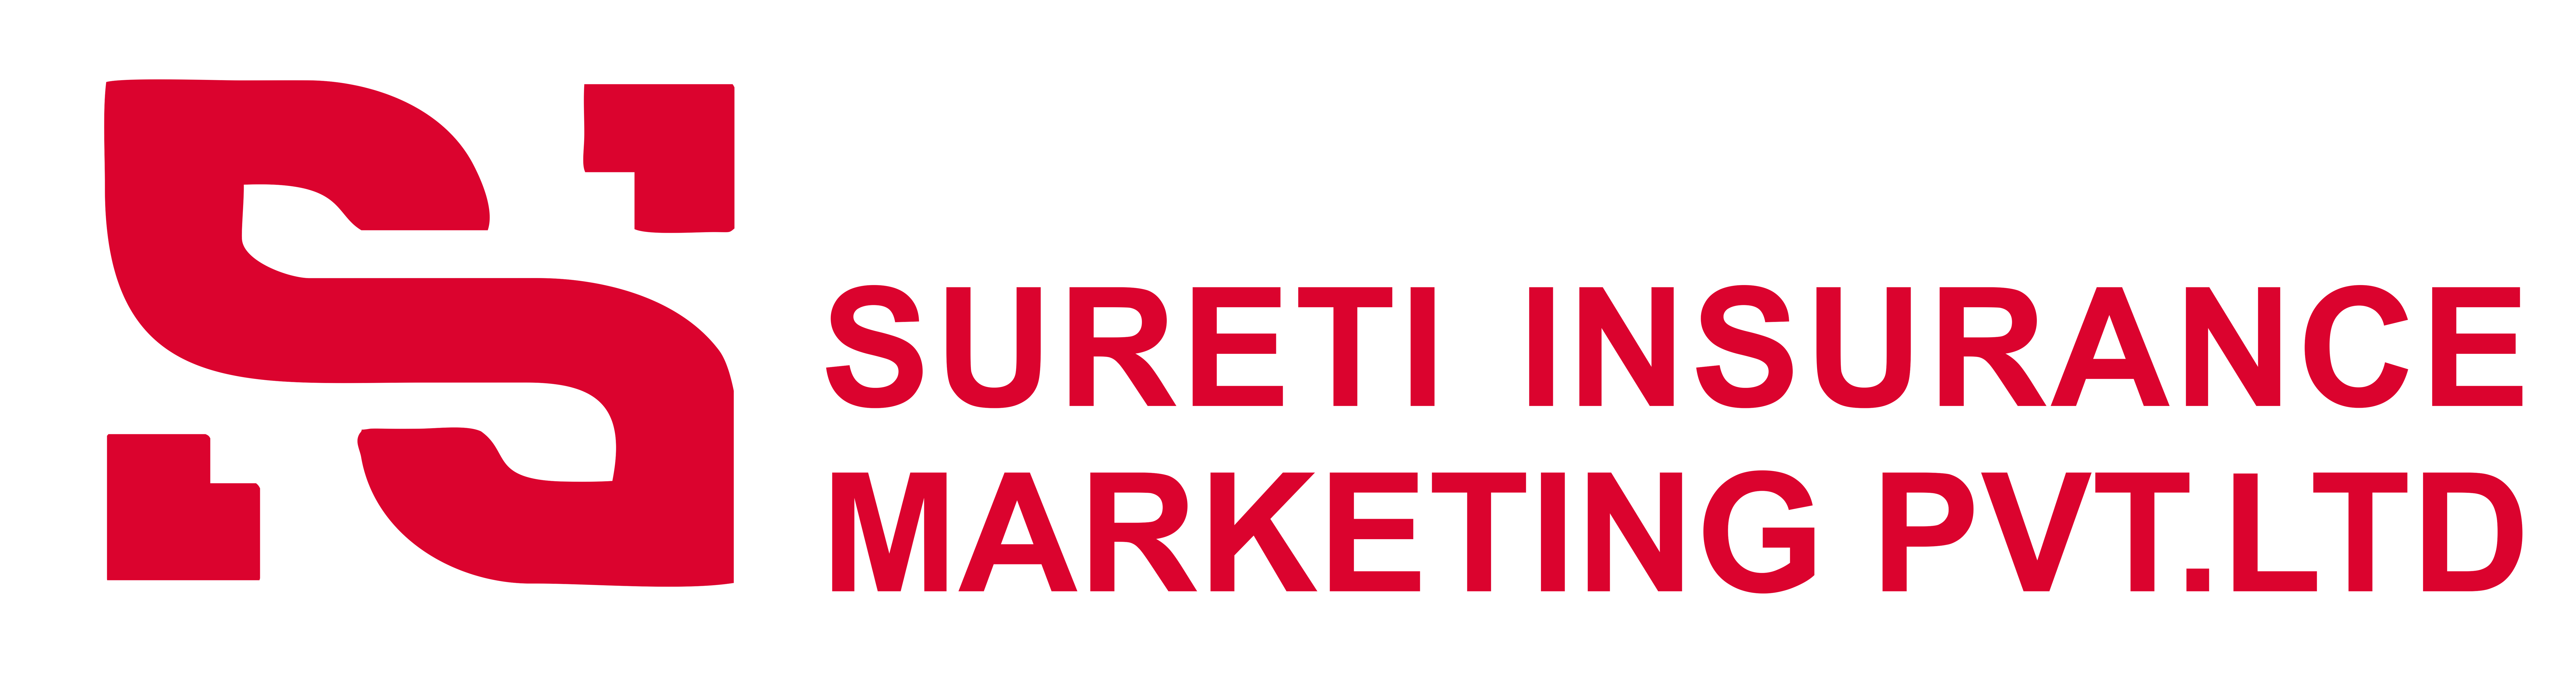 Sureti Insurance Marketing Pvt Ltd